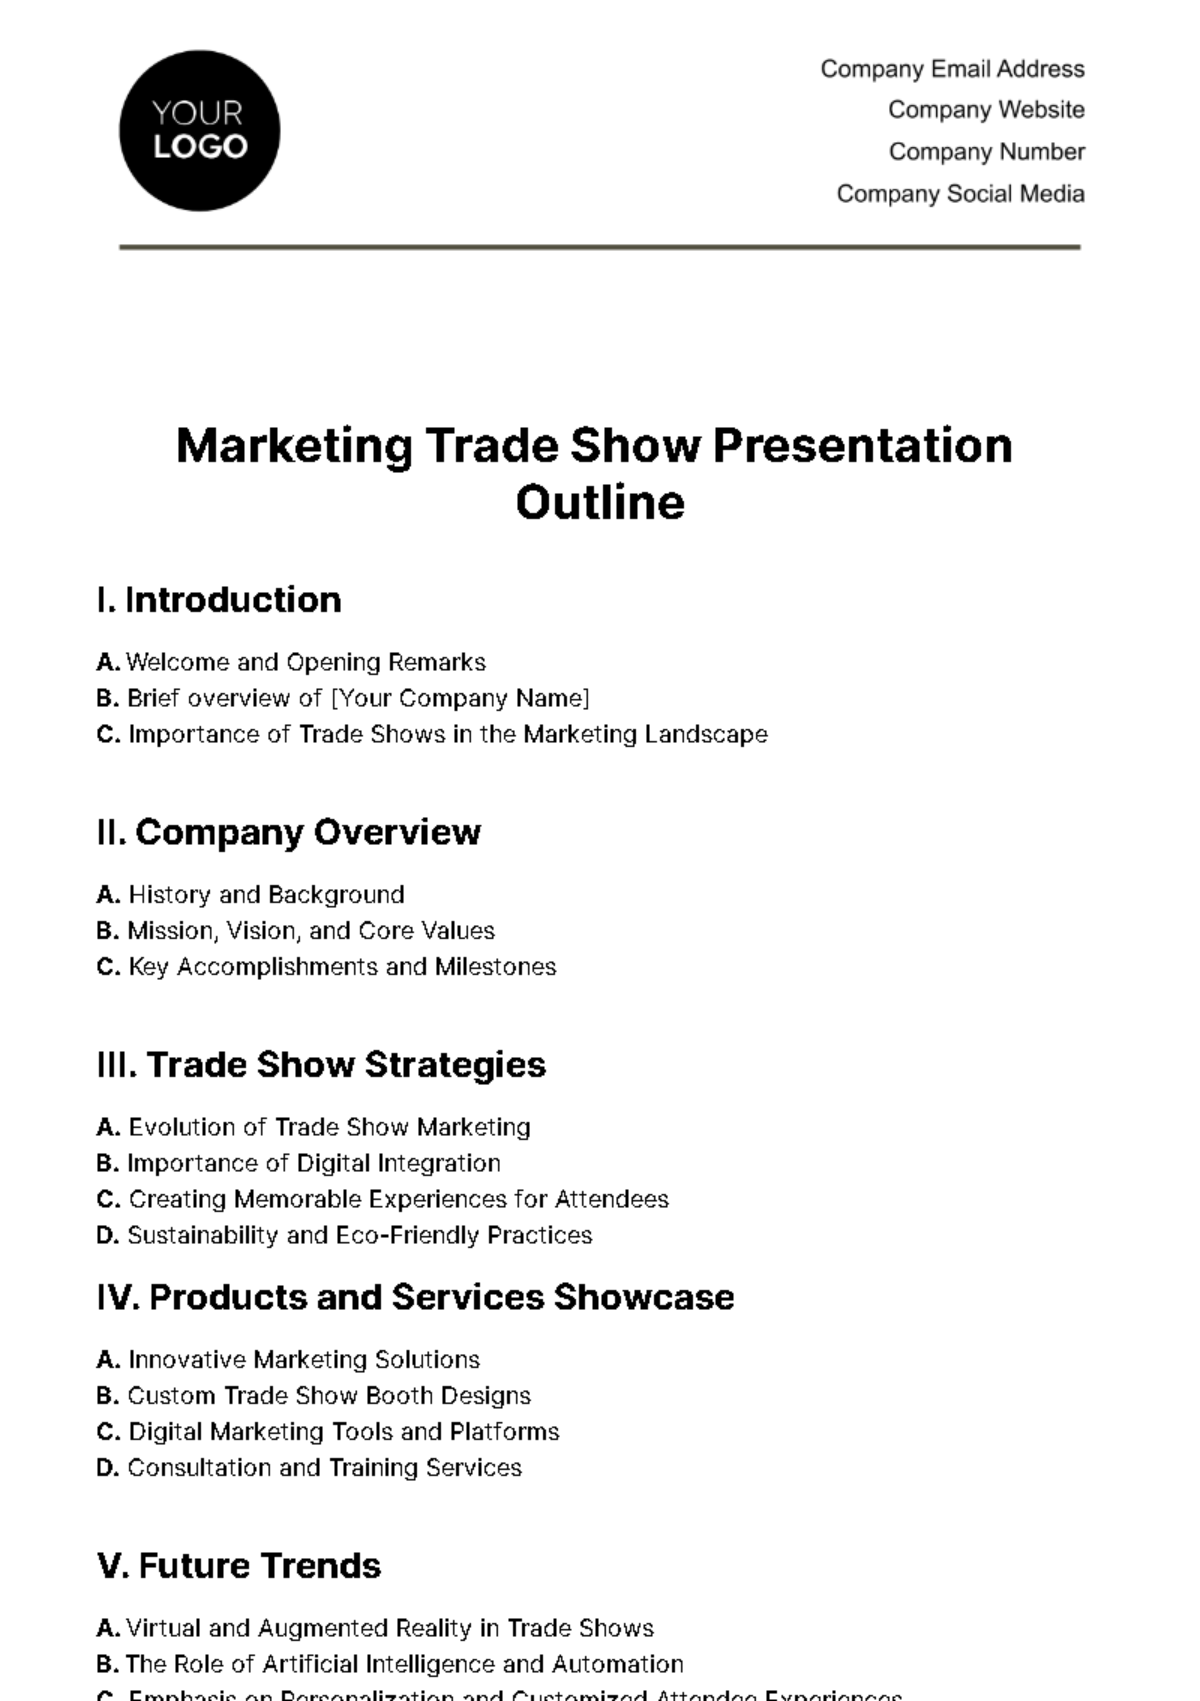 Free Marketing Trade Show Presentation Outline Template